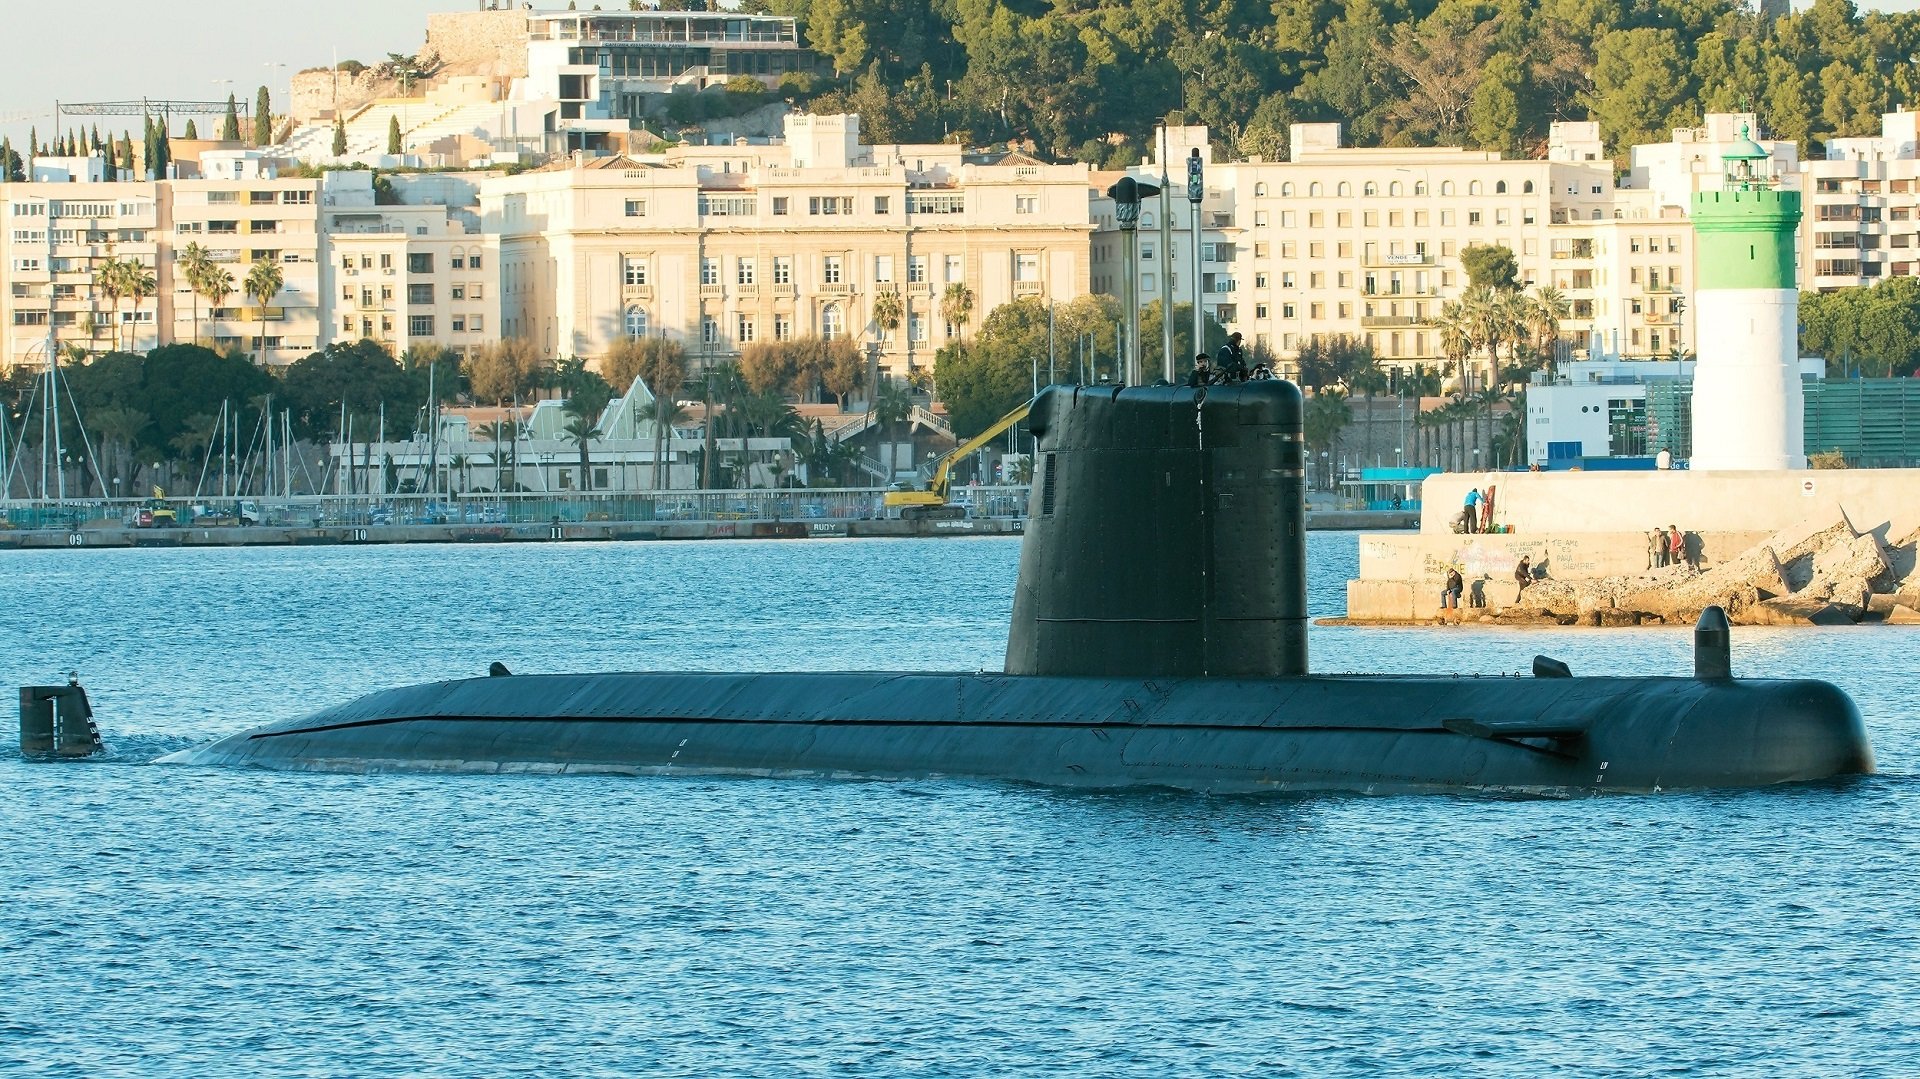 El ejército español vende un submarino, más barato que un piso en Barcelona